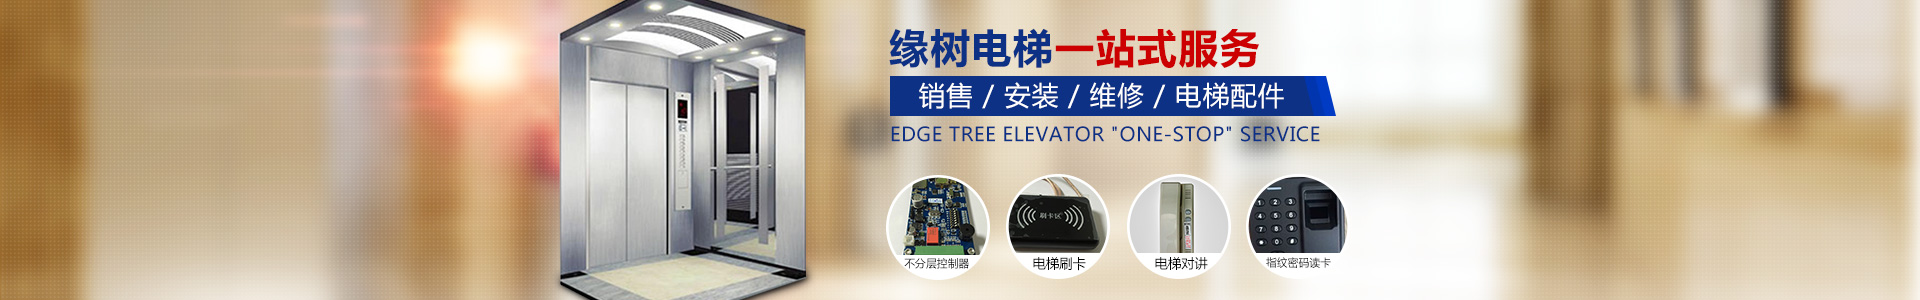 湖南缘树机电有限责任公司_湖南IC卡|电梯无线对讲系统|刷卡器价格